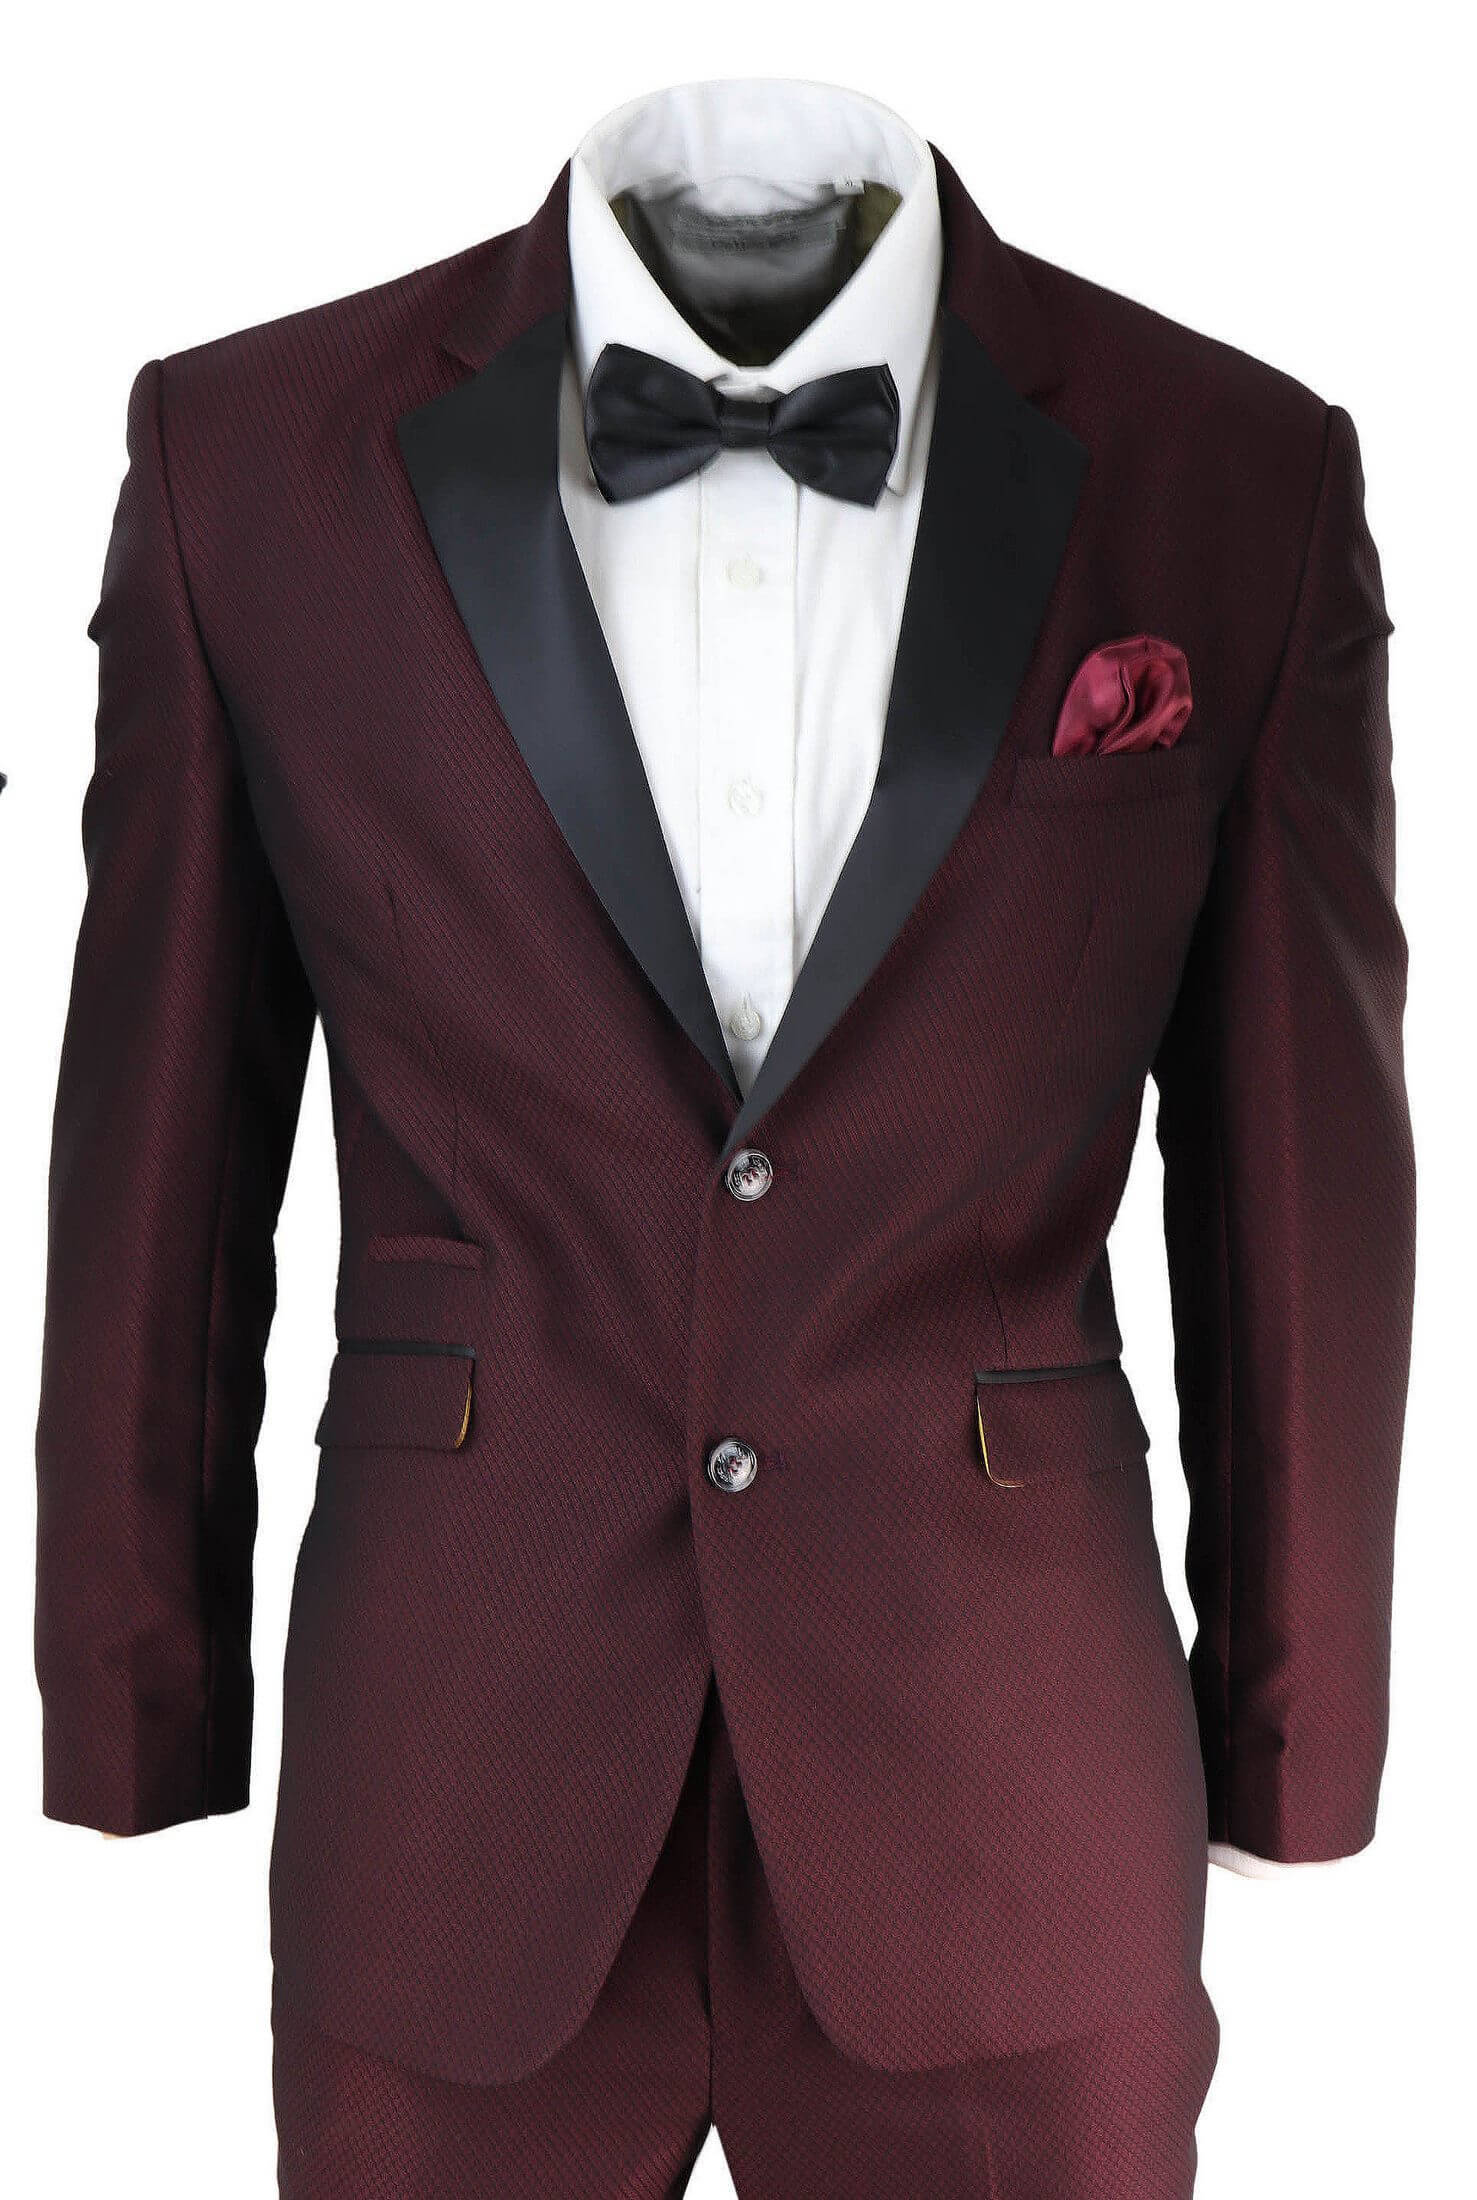 Mens Wine Tuxedo Dinner Suit: Buy Online - Happy Gentleman